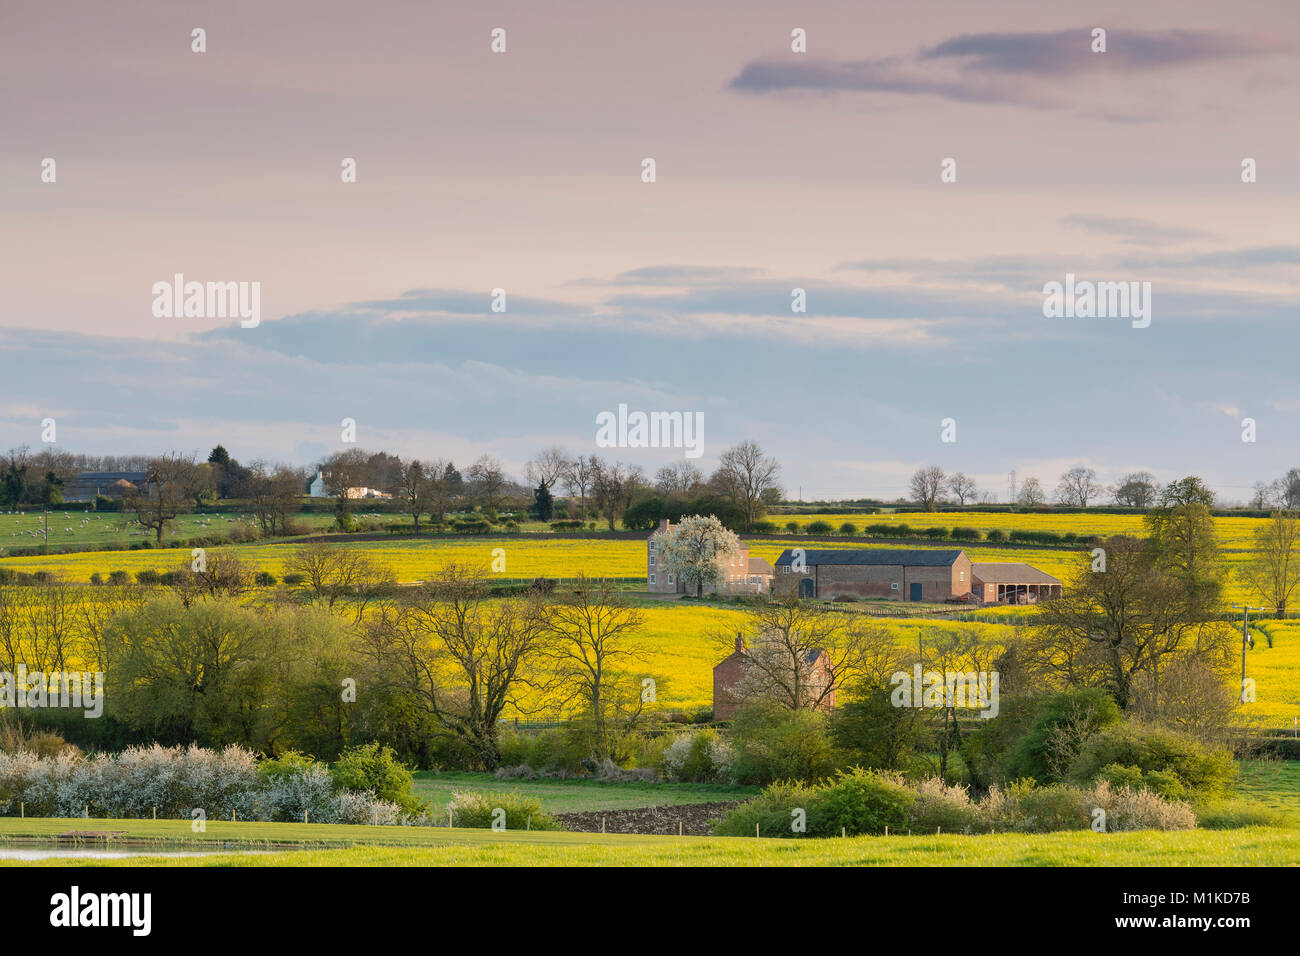 La imagen de una granja y edificios ubicados en la campiña de Leicestershire, Inglaterra, Reino Unido. Foto de stock